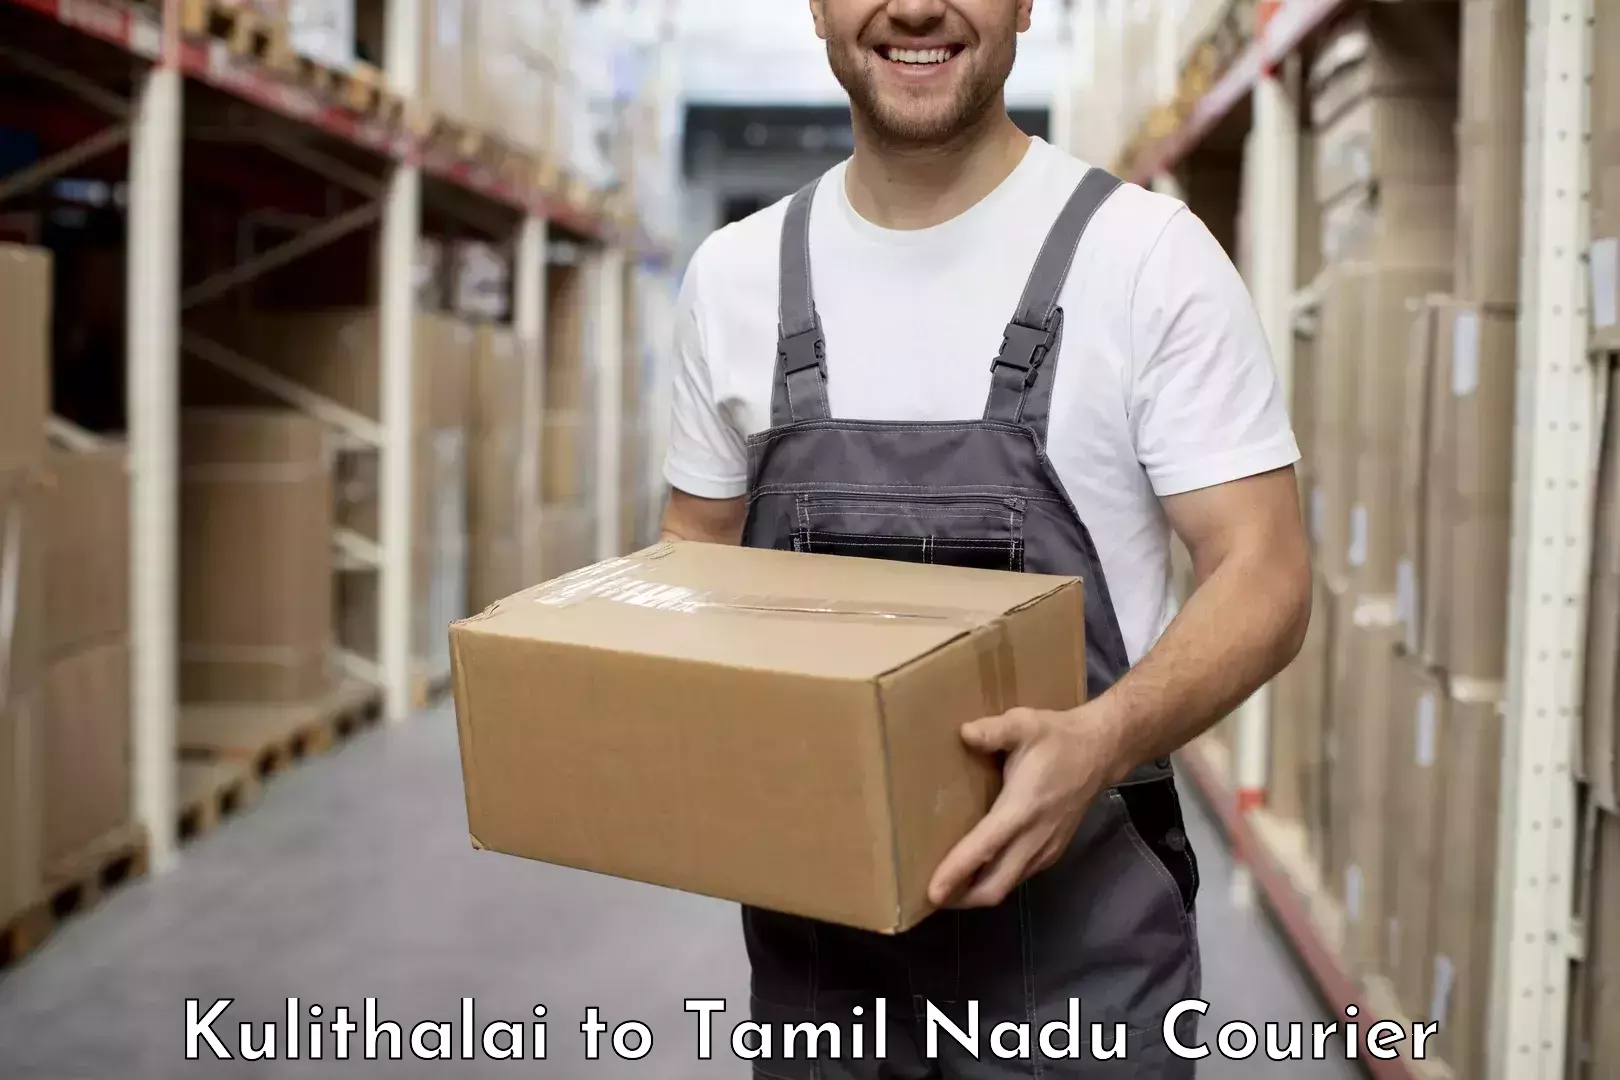 Discounted shipping Kulithalai to Kodumudi